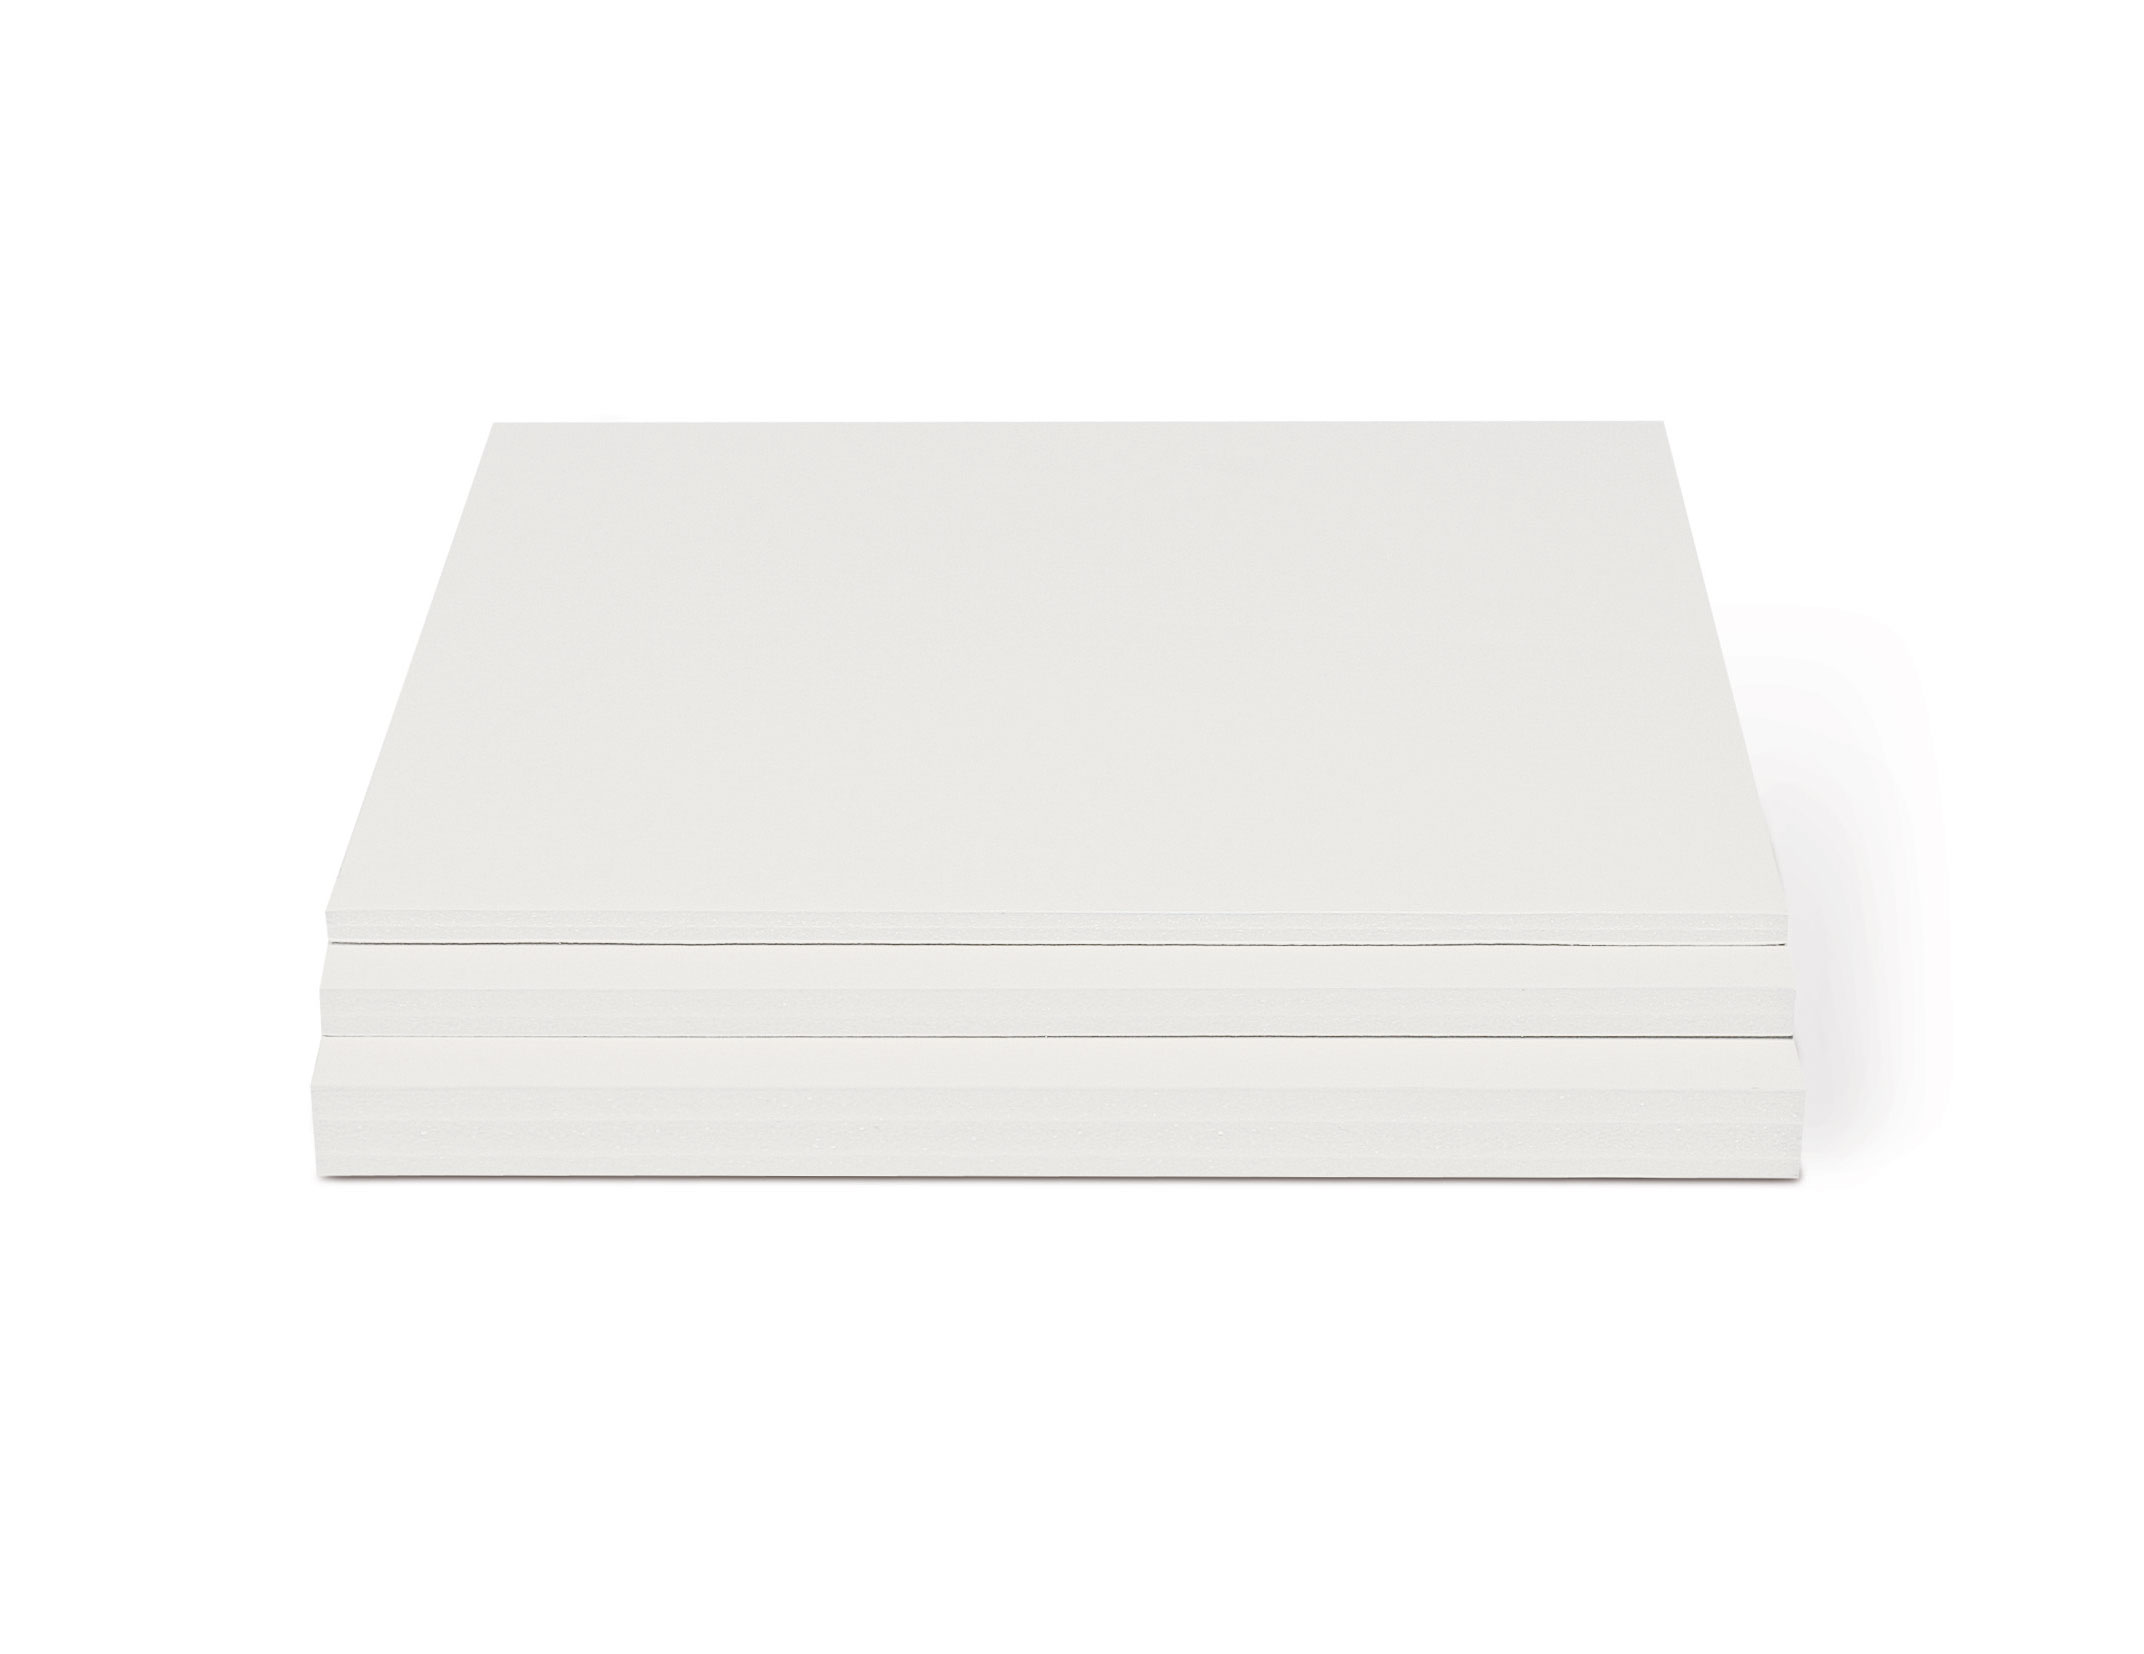 Carton mousse blanc  Le Géant des Beaux-Arts - N°1 de la vente en ligne de  matériels pour Artistes